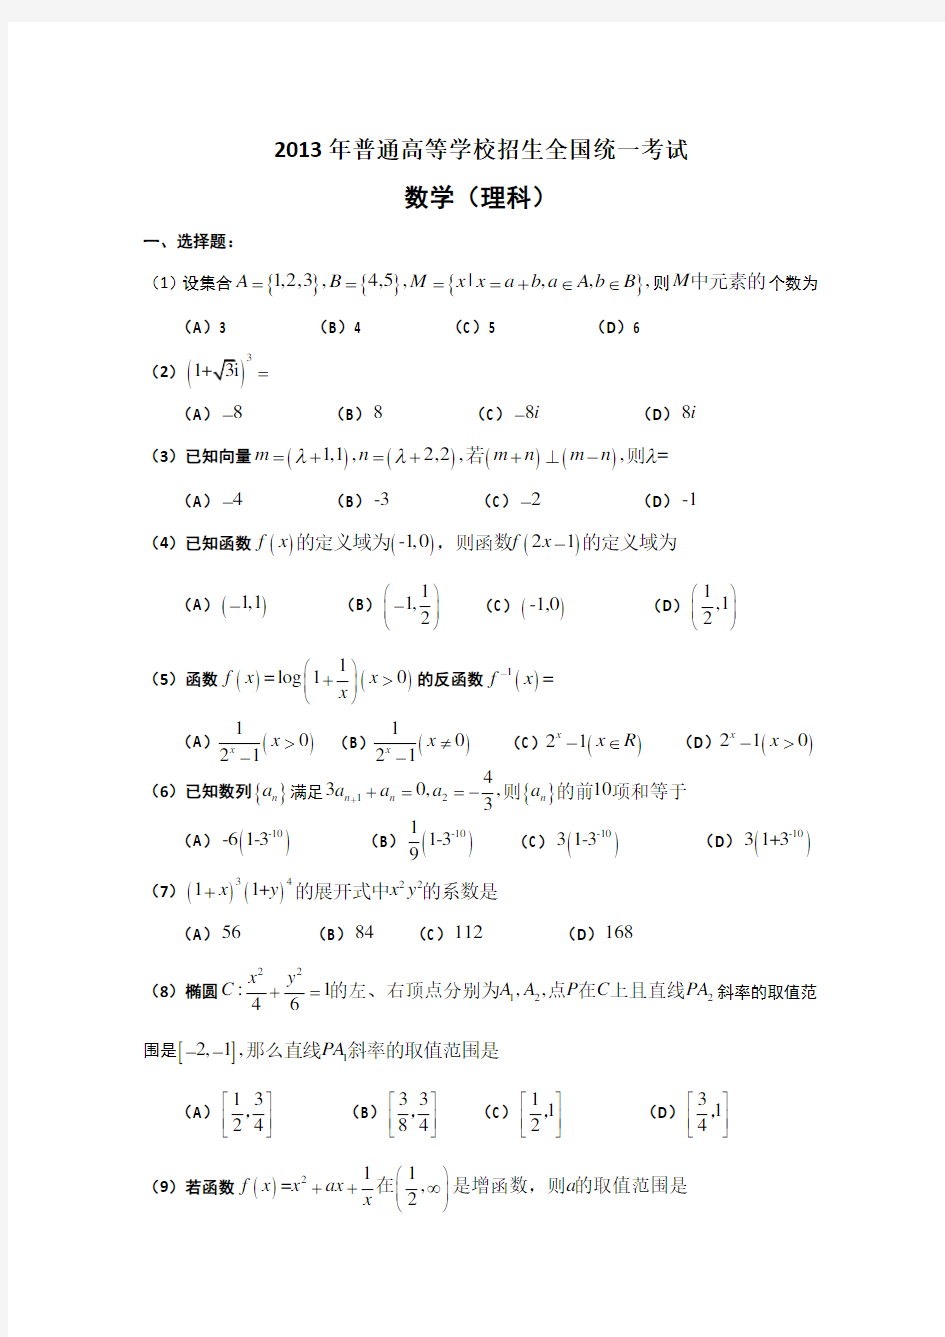 2013年高考真题——理科数学(全国卷大纲版)